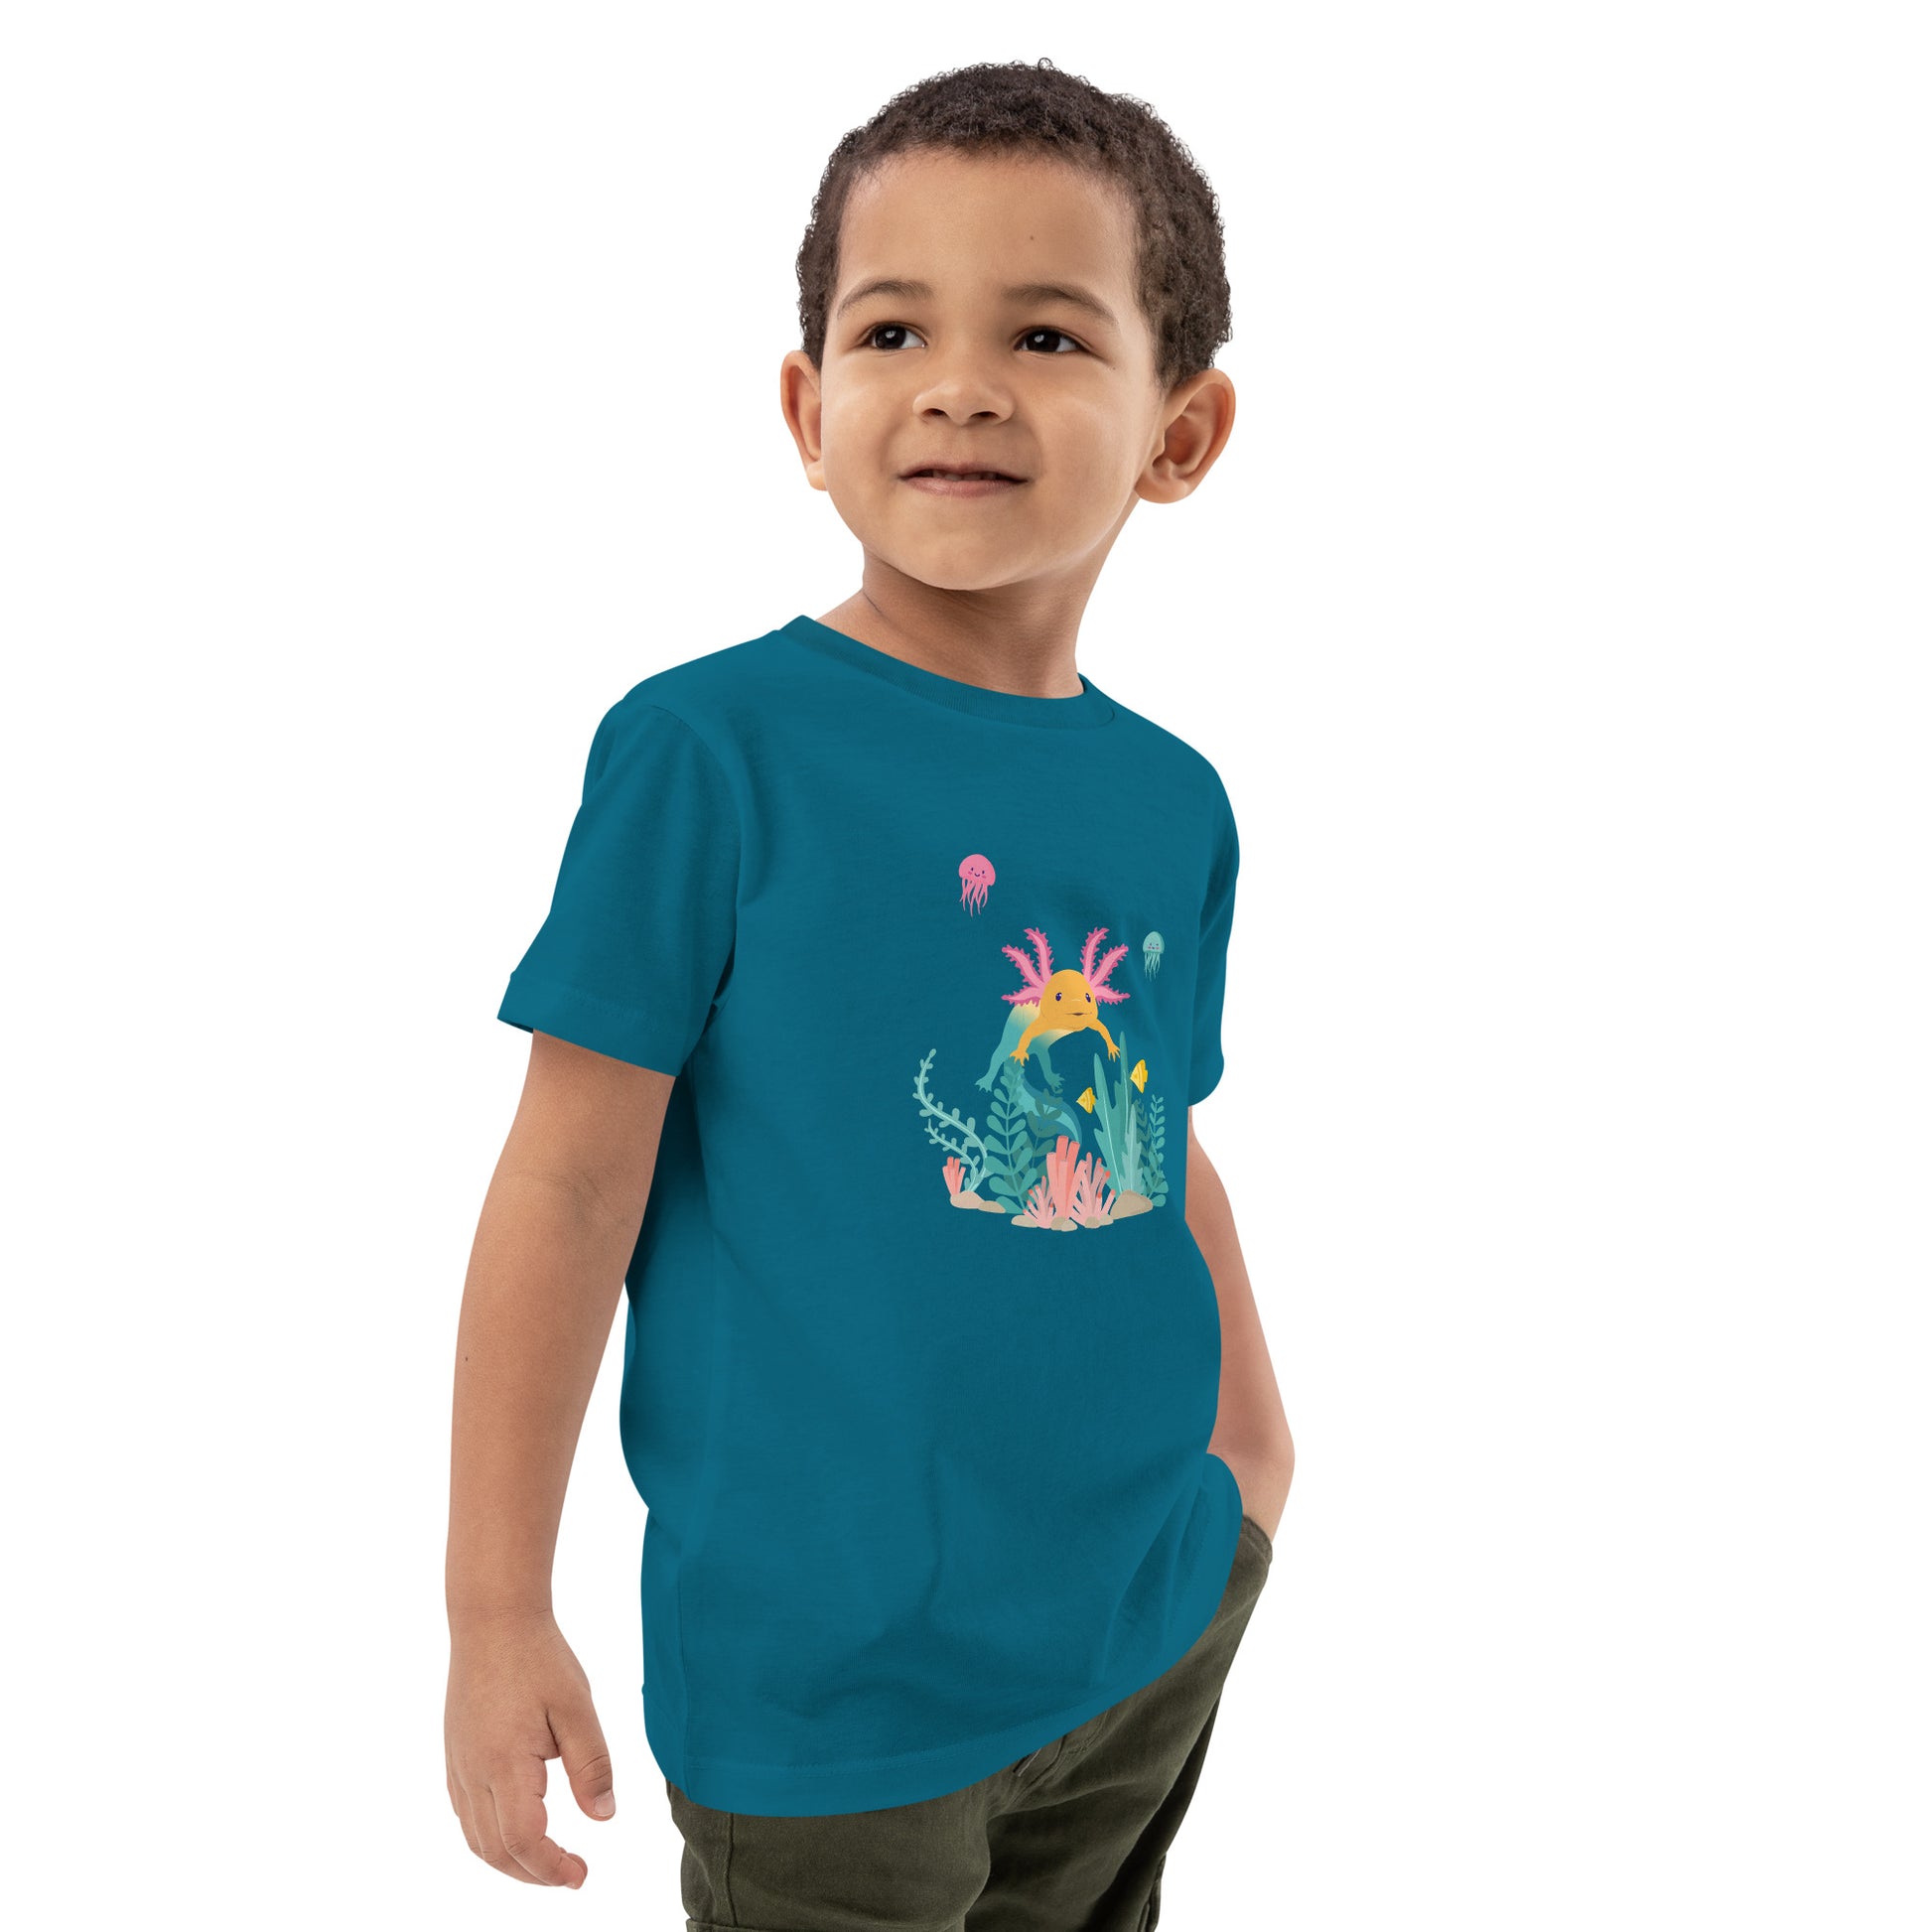 Barn T-shirt i färgen oceanblå. Ekologisk bomull och tryck med axolotlen Axis i bottenmiljö.